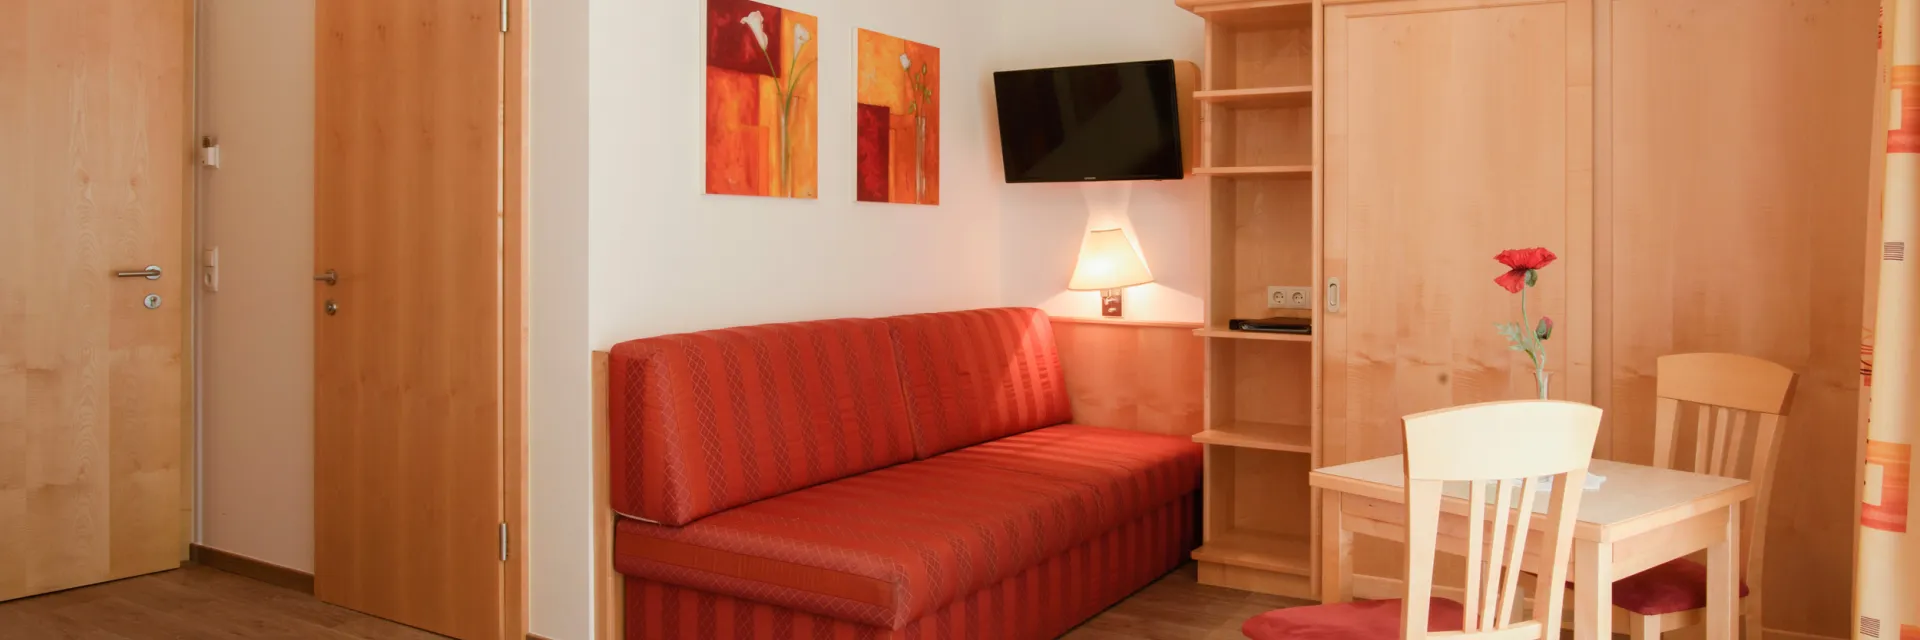 Hotelzimmer mit einer roten Couch und einem charmanten Holzesstisch für zwei Personen.